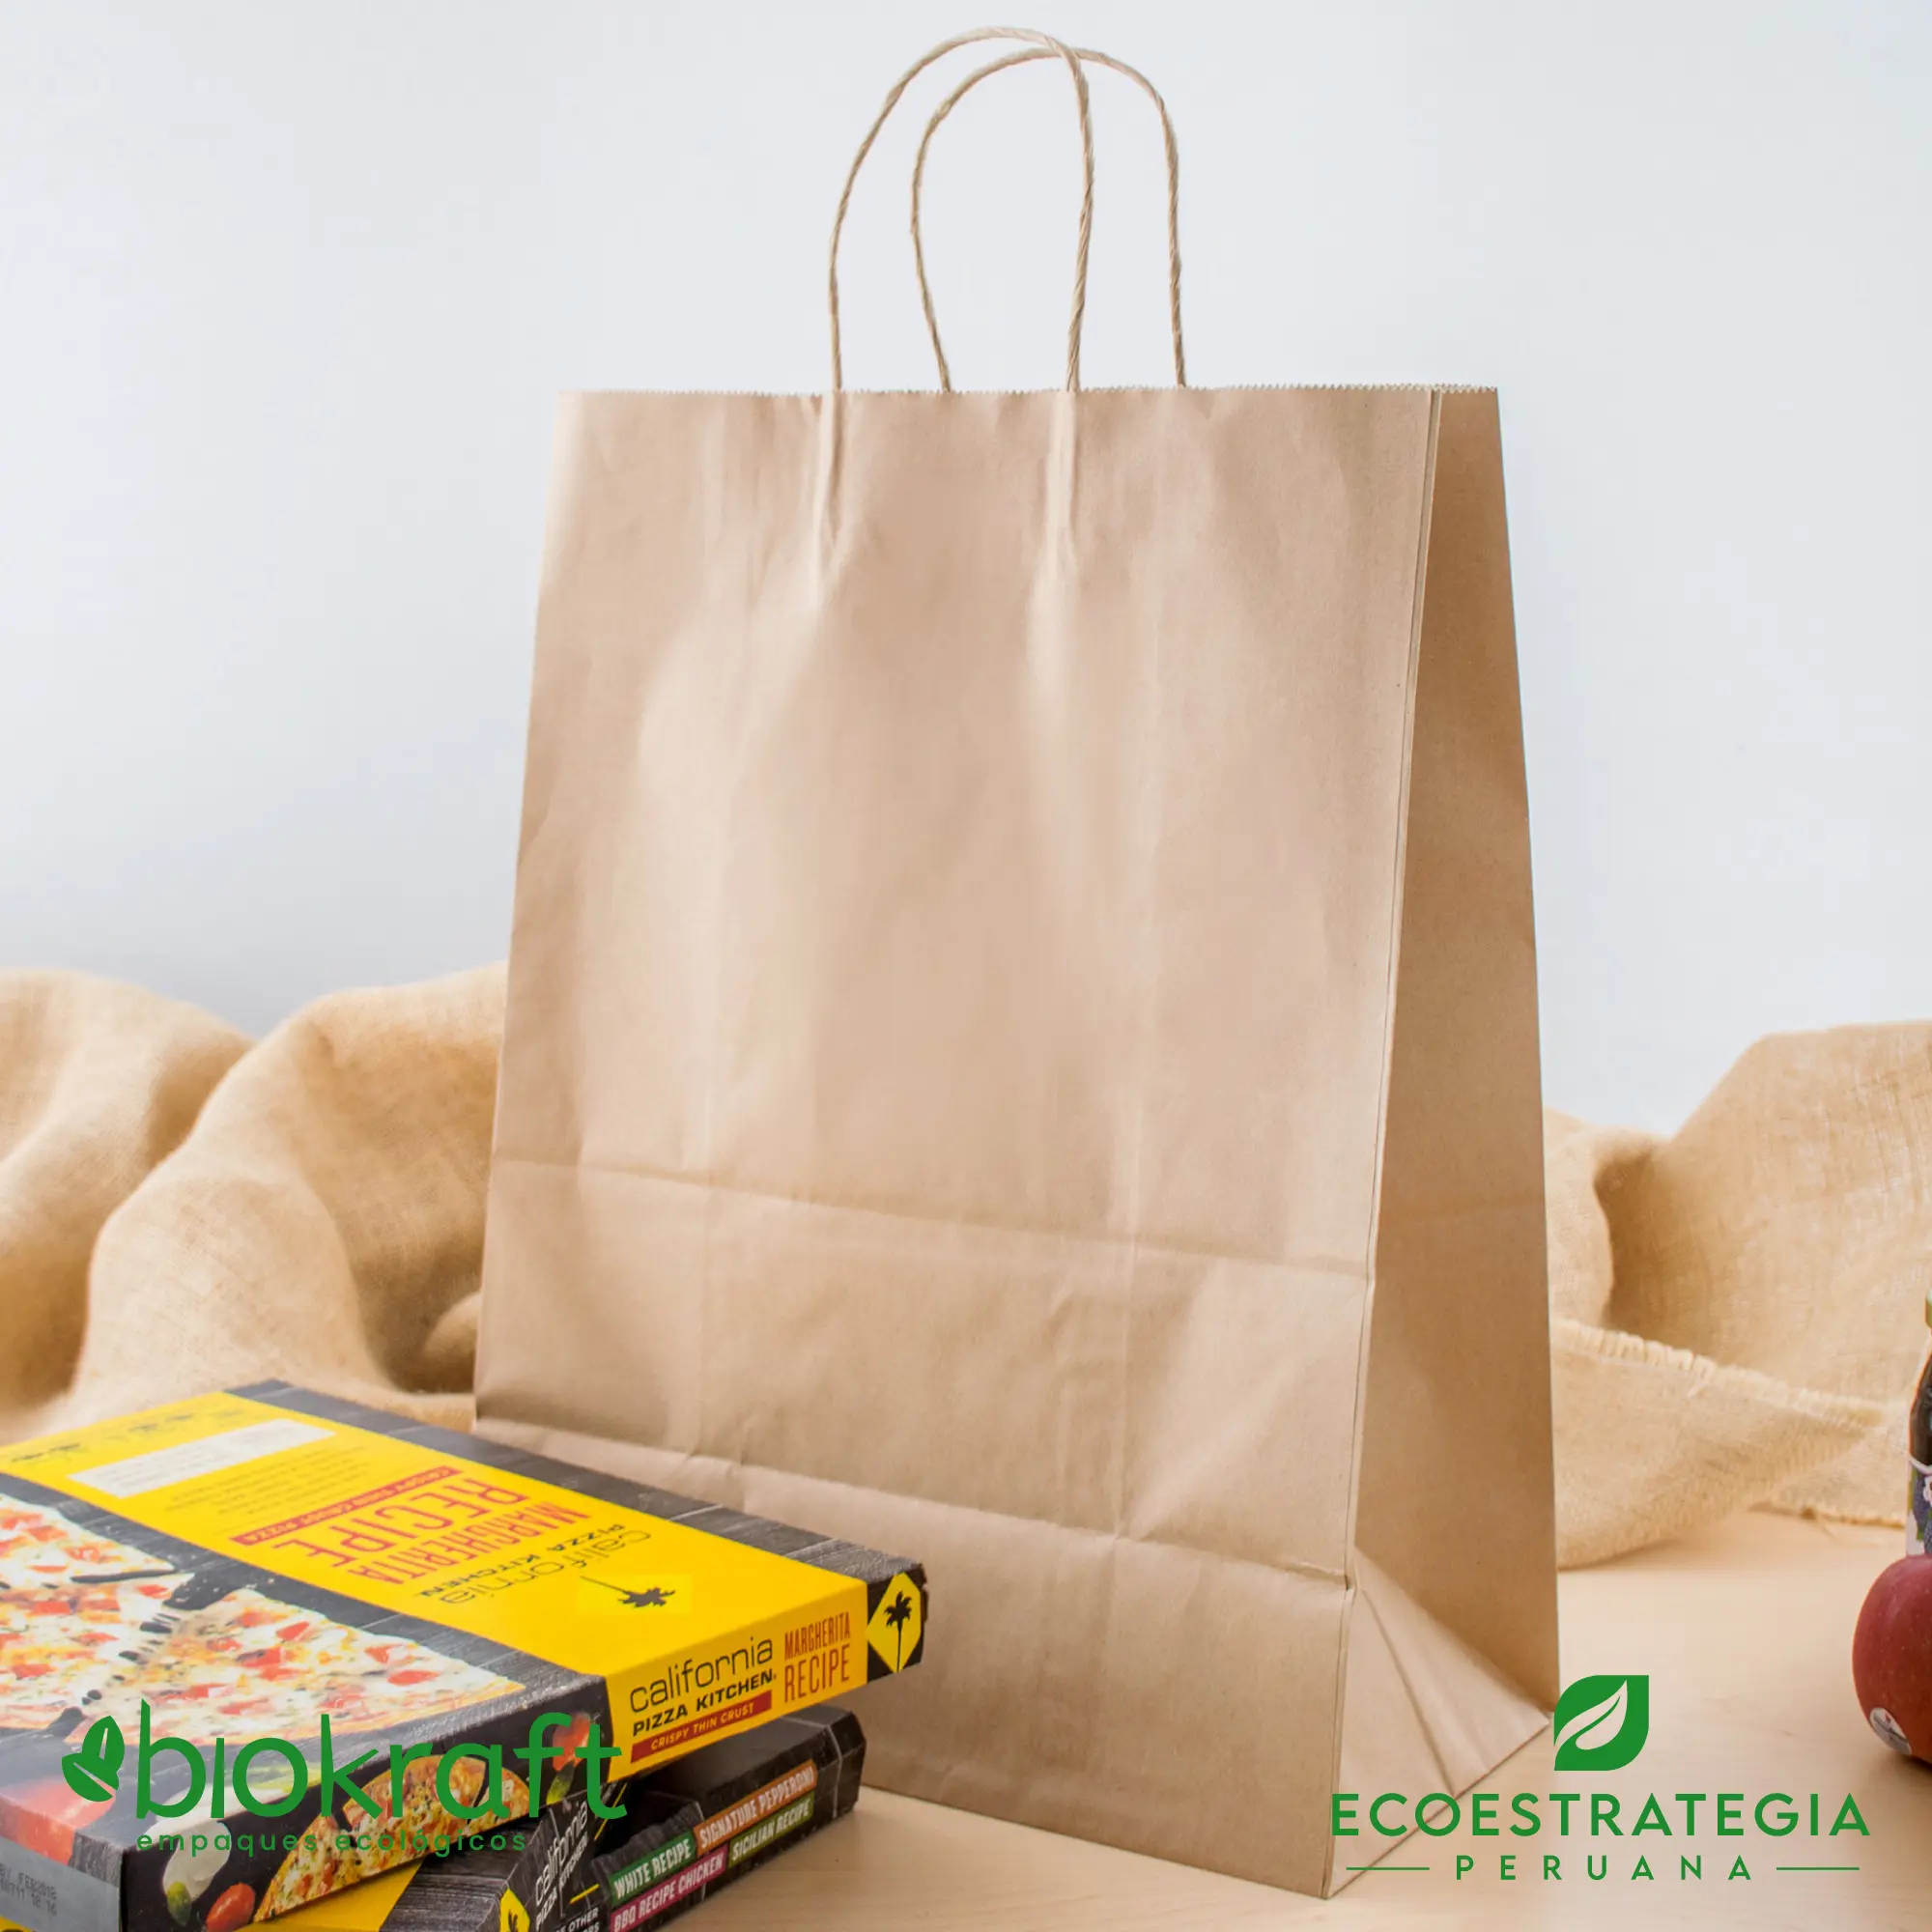 Esta bolsa de papel Kraft tiene un grosor de 125gr y un peso de 80gr. Bolsas biodegradables y ecologicas reutilizables y personalizadas. Ideal para delivery